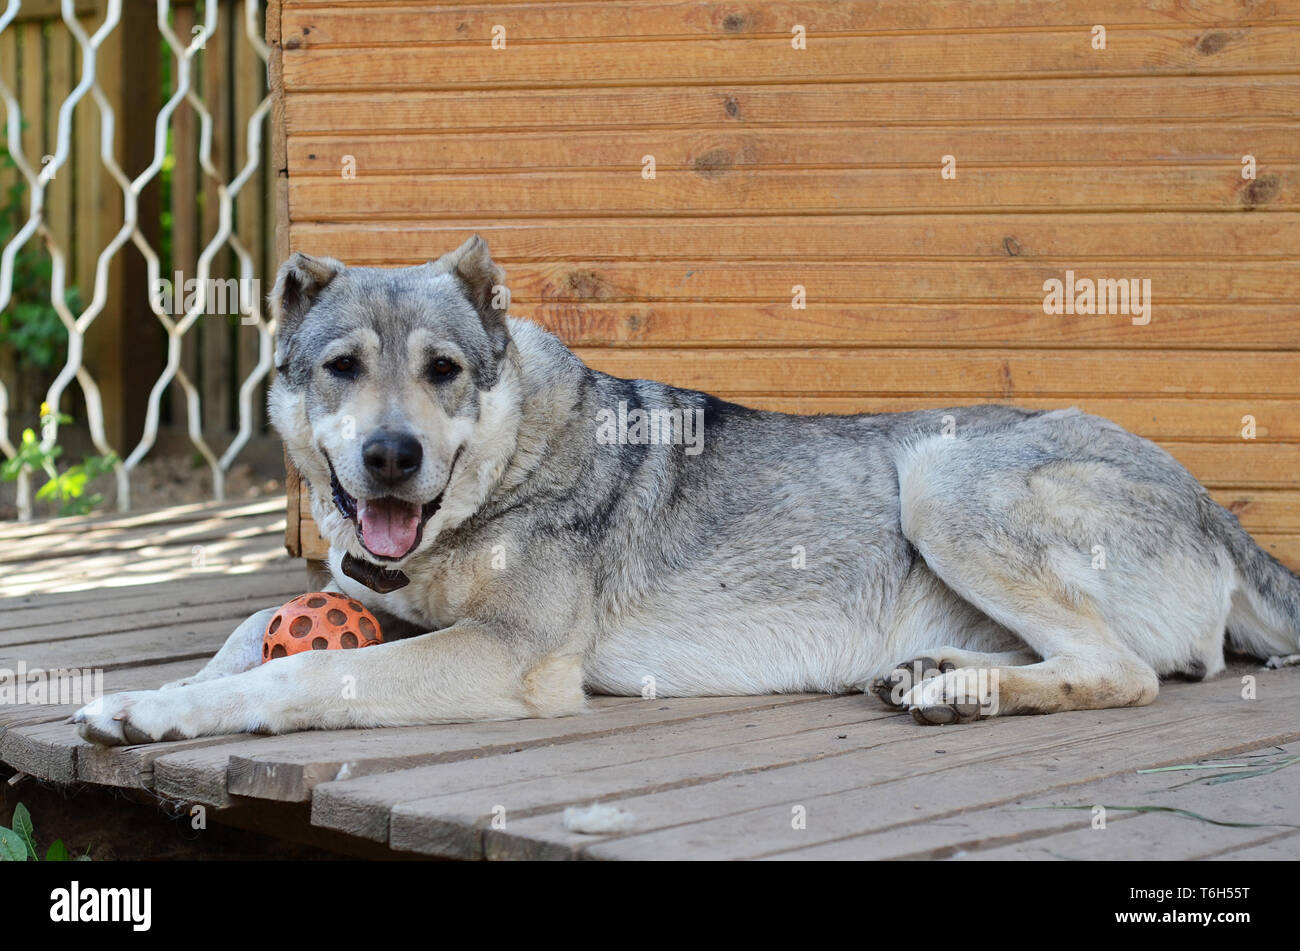 Grand chien chien de berger d'Asie centrale située près de son domicile Banque D'Images